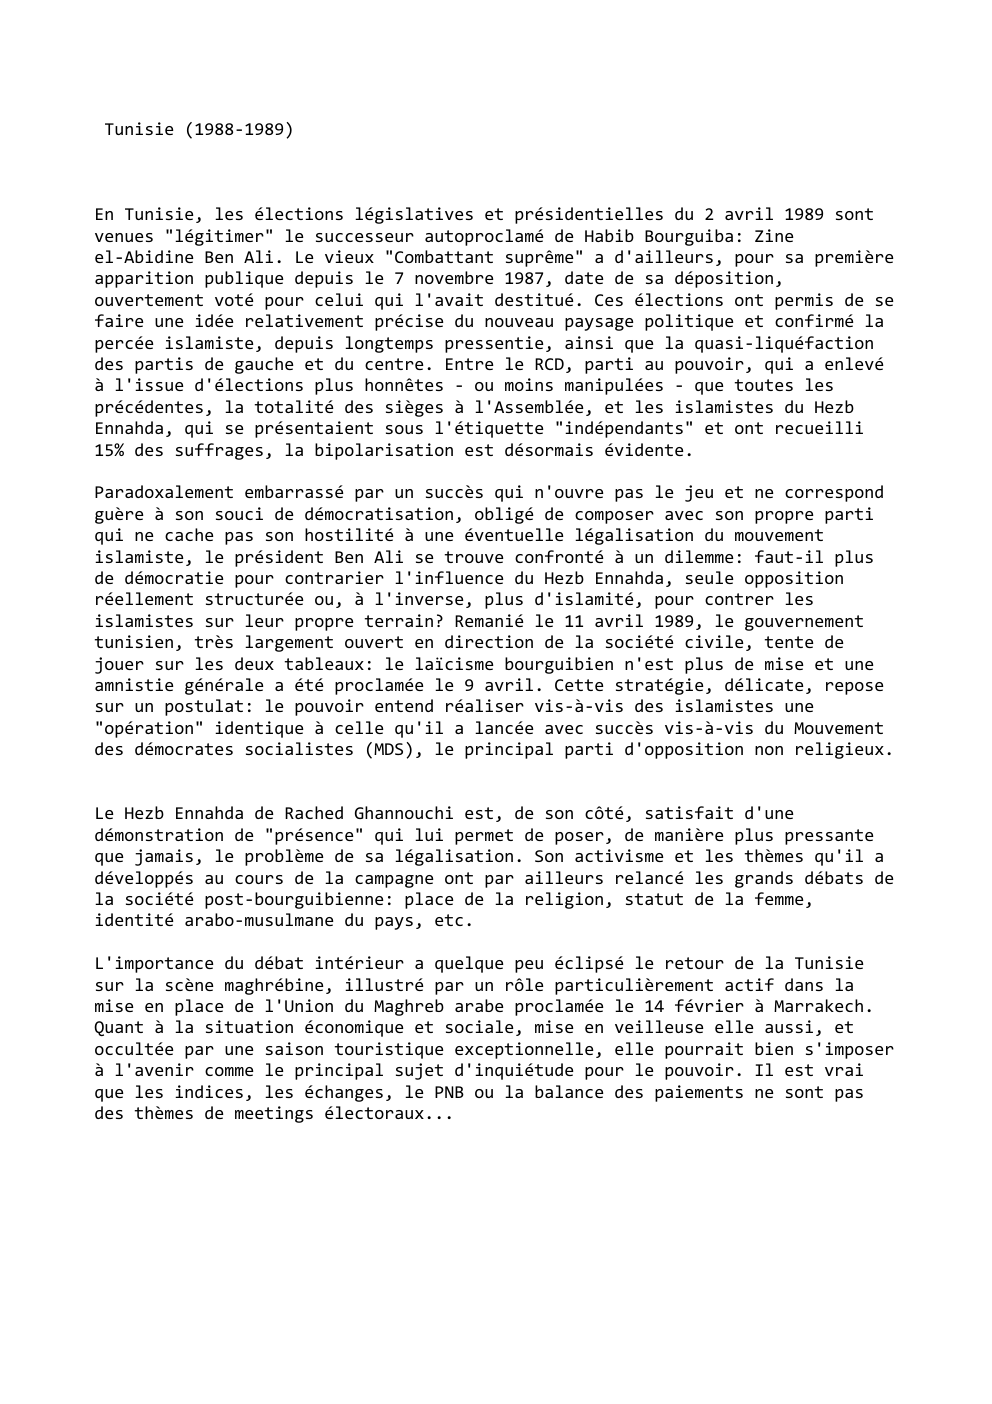 Prévisualisation du document Tunisie (1988-1989)

En Tunisie, les élections législatives et présidentielles du 2 avril 1989 sont
venues "légitimer" le successeur autoproclamé de...